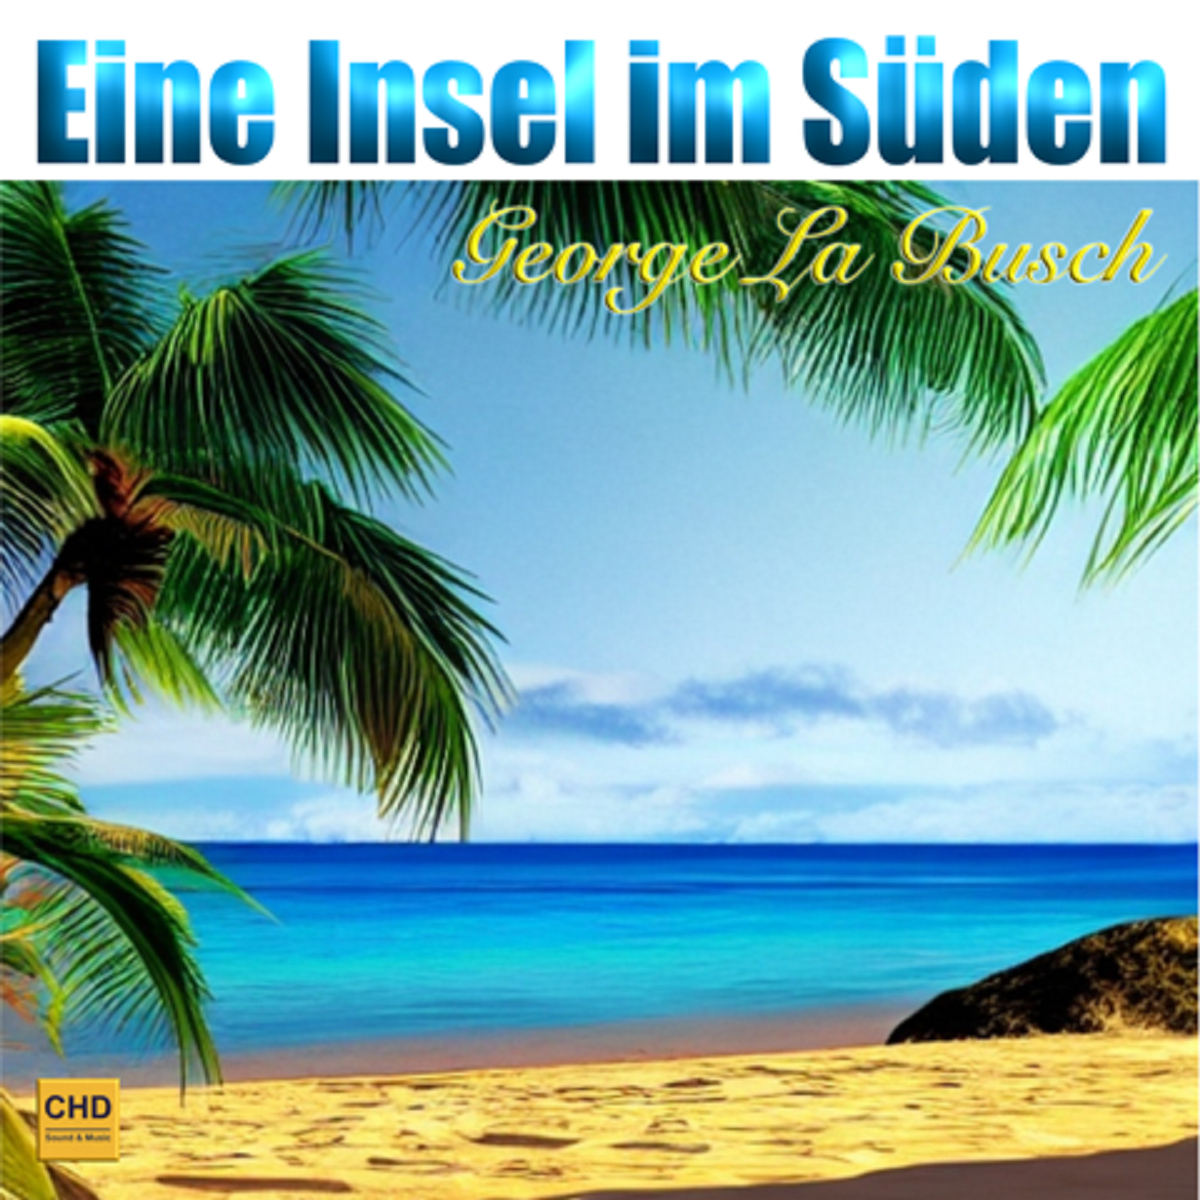 George la Busch - Eine Insel im Sden - Frontcover.png